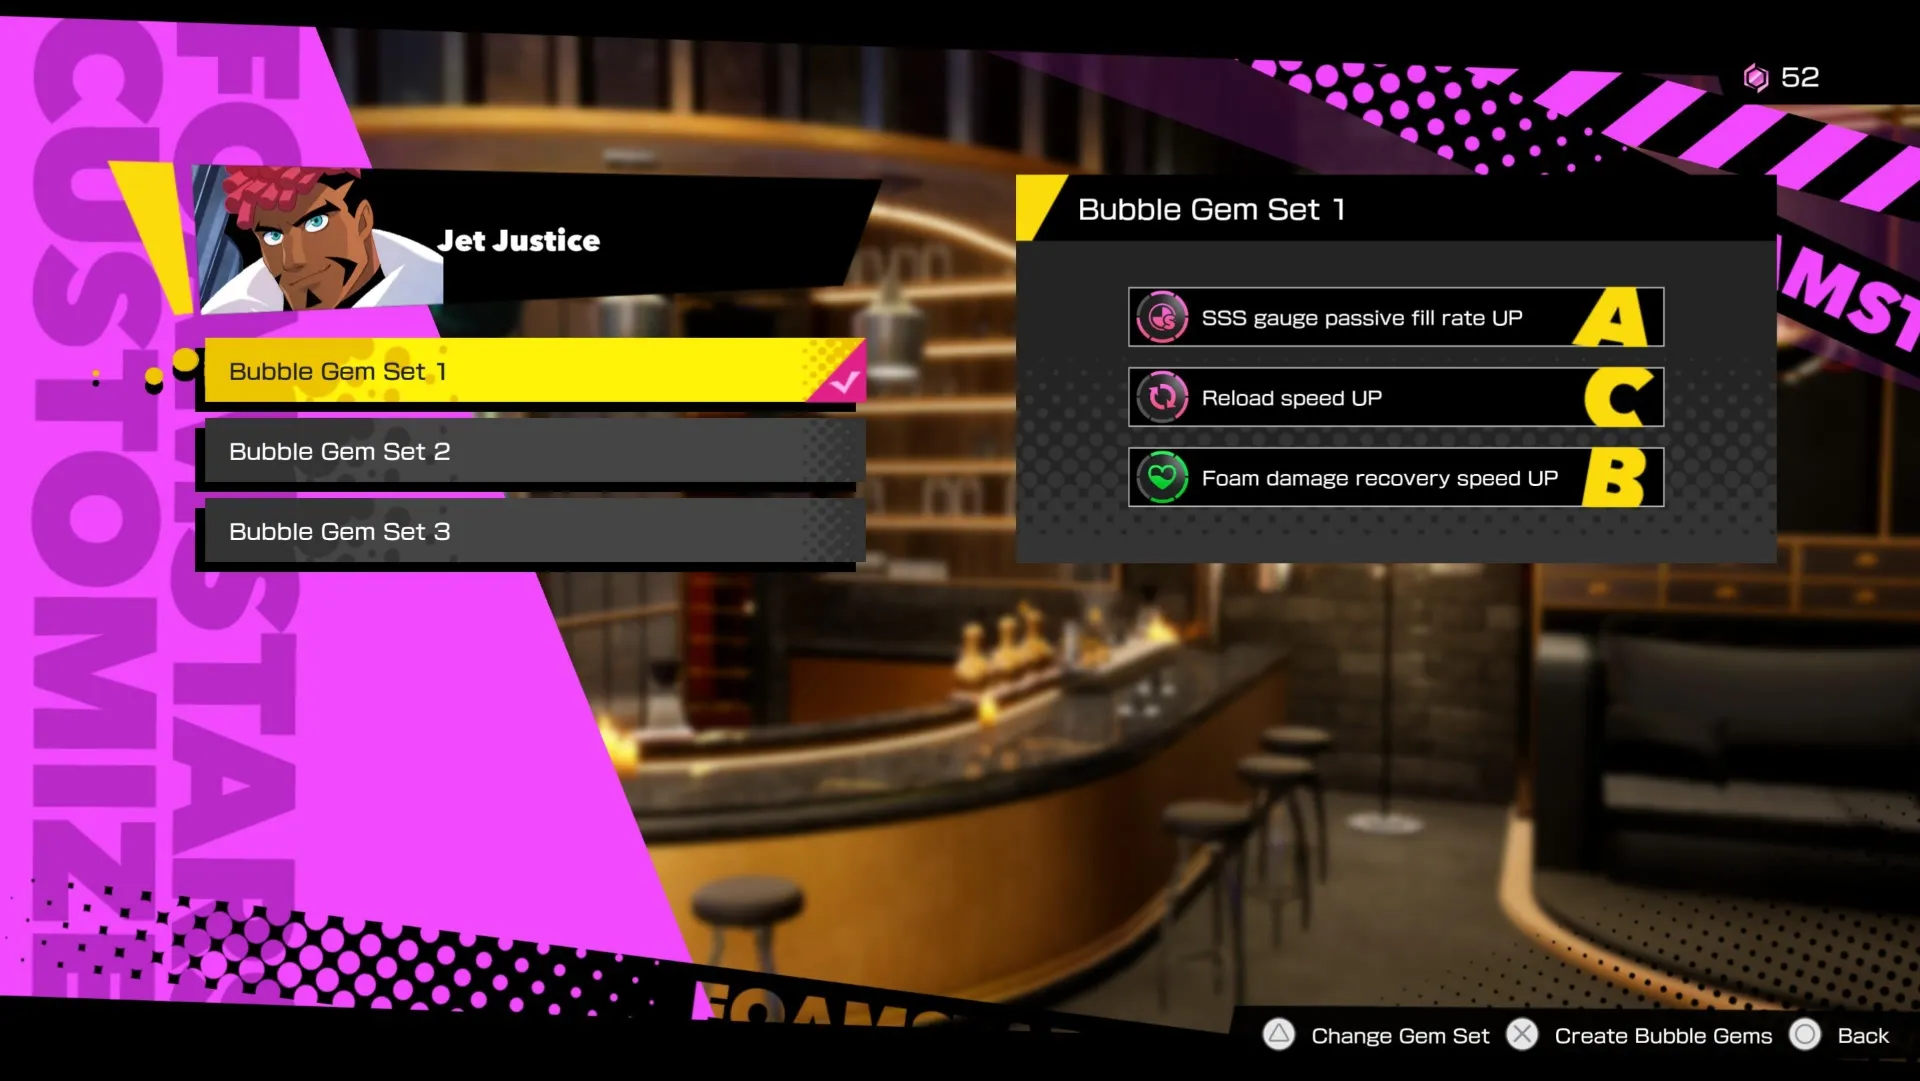 Jet Justice montrant le Set 1 de Bubble Gem, avec plusieurs améliorations dans Foamstars.